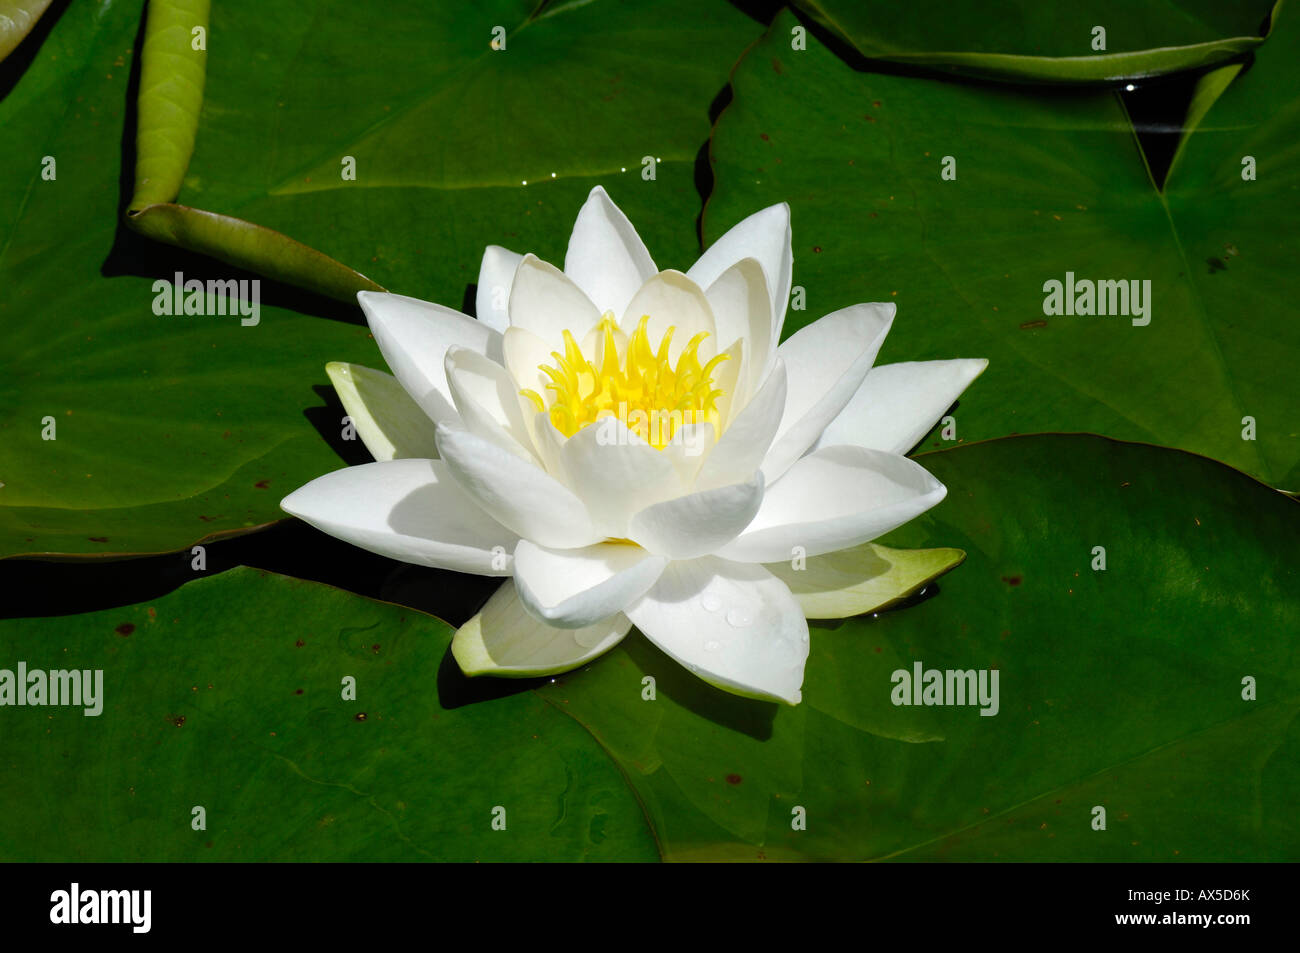 European White Waterlily or White Lotus (Nymphaea alba) Stock Photo